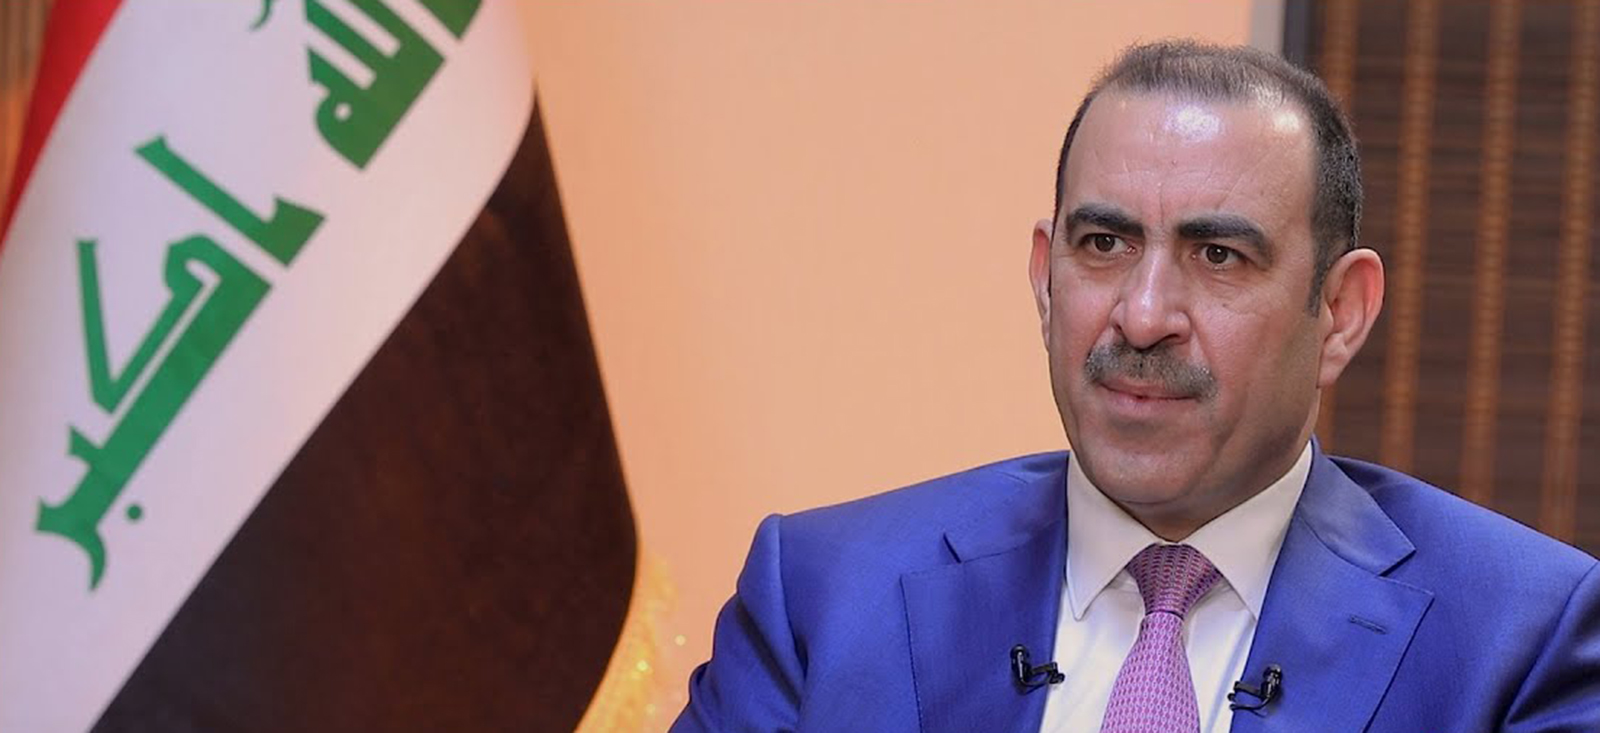 وزير الصناعة والمعادن العراقي: نسعى لتعزيز التعاون مع الإمارات